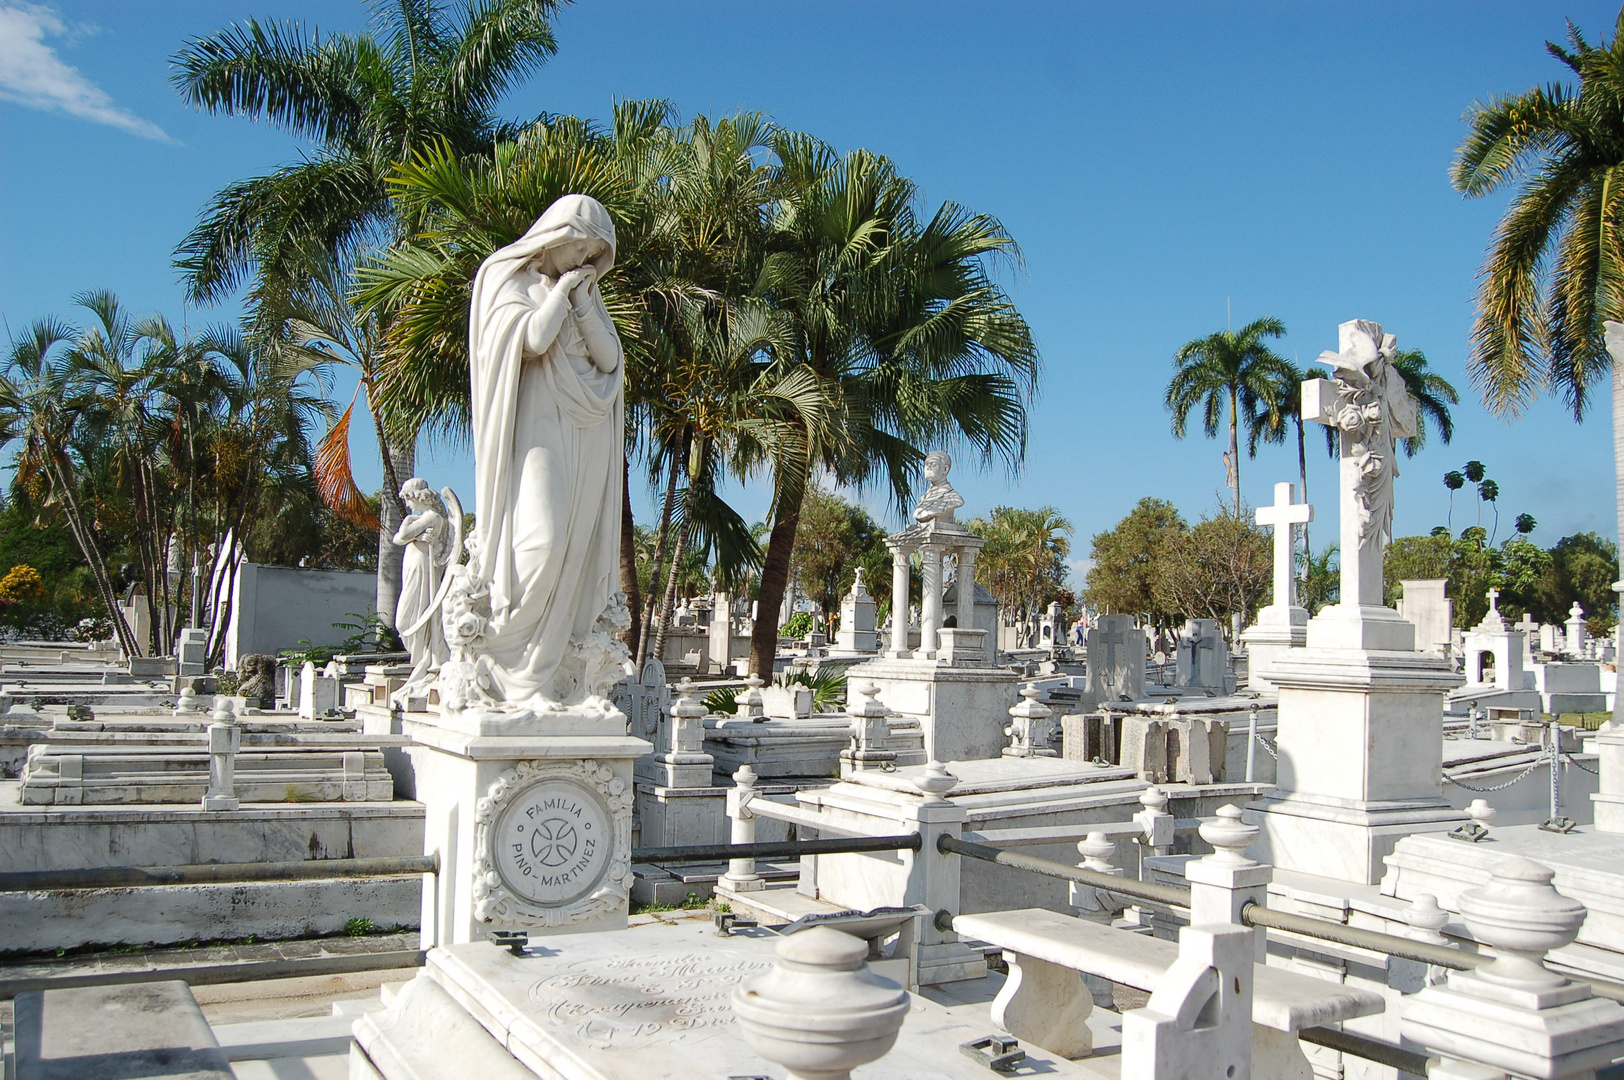 Santiago de Cuba - Cementerio Santa Ifigenia